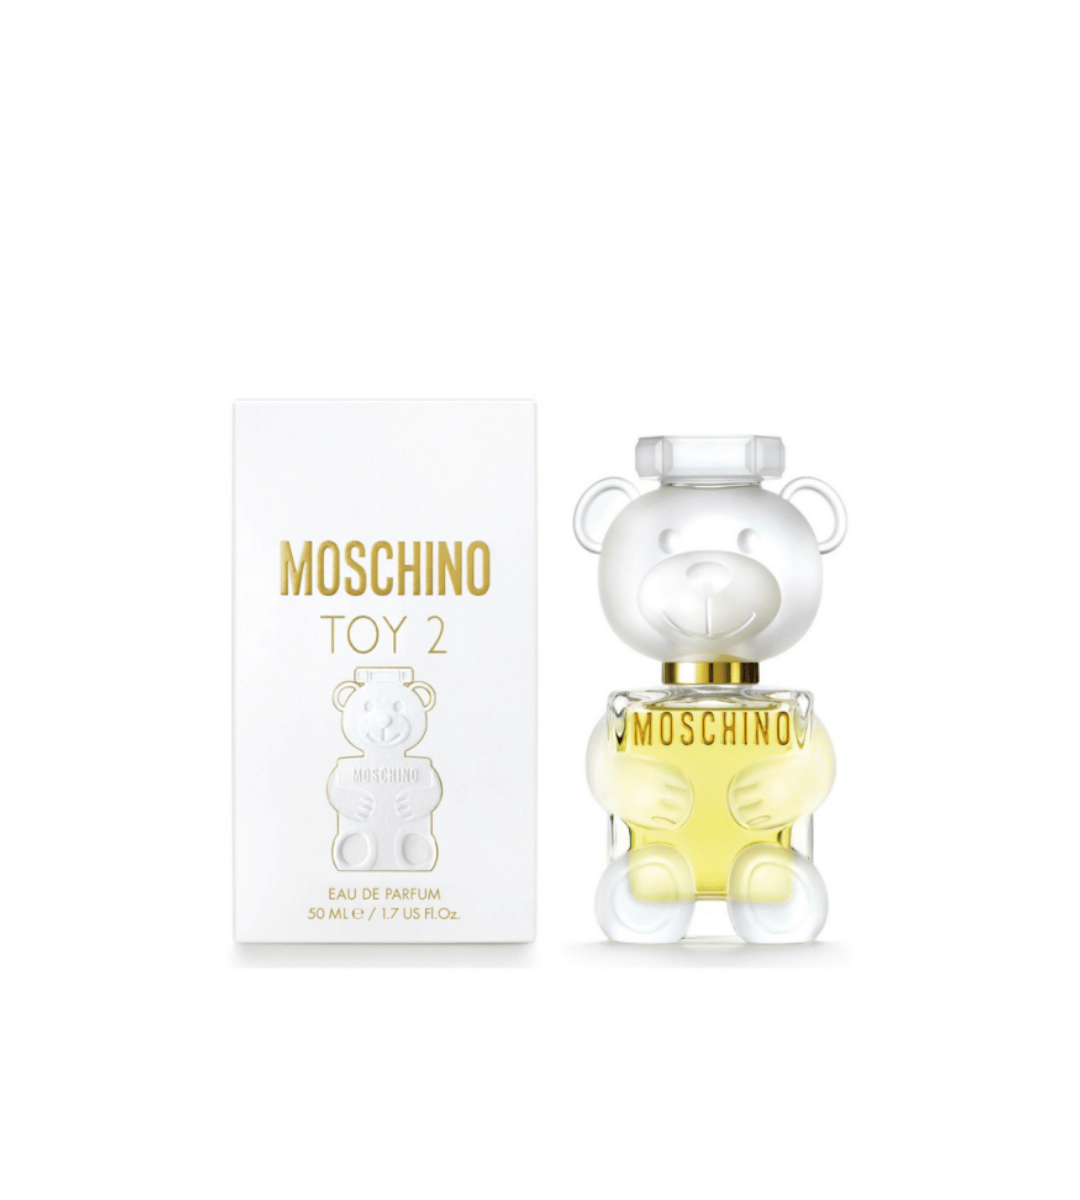 Moschino - Toy 2 Eau De Parfum